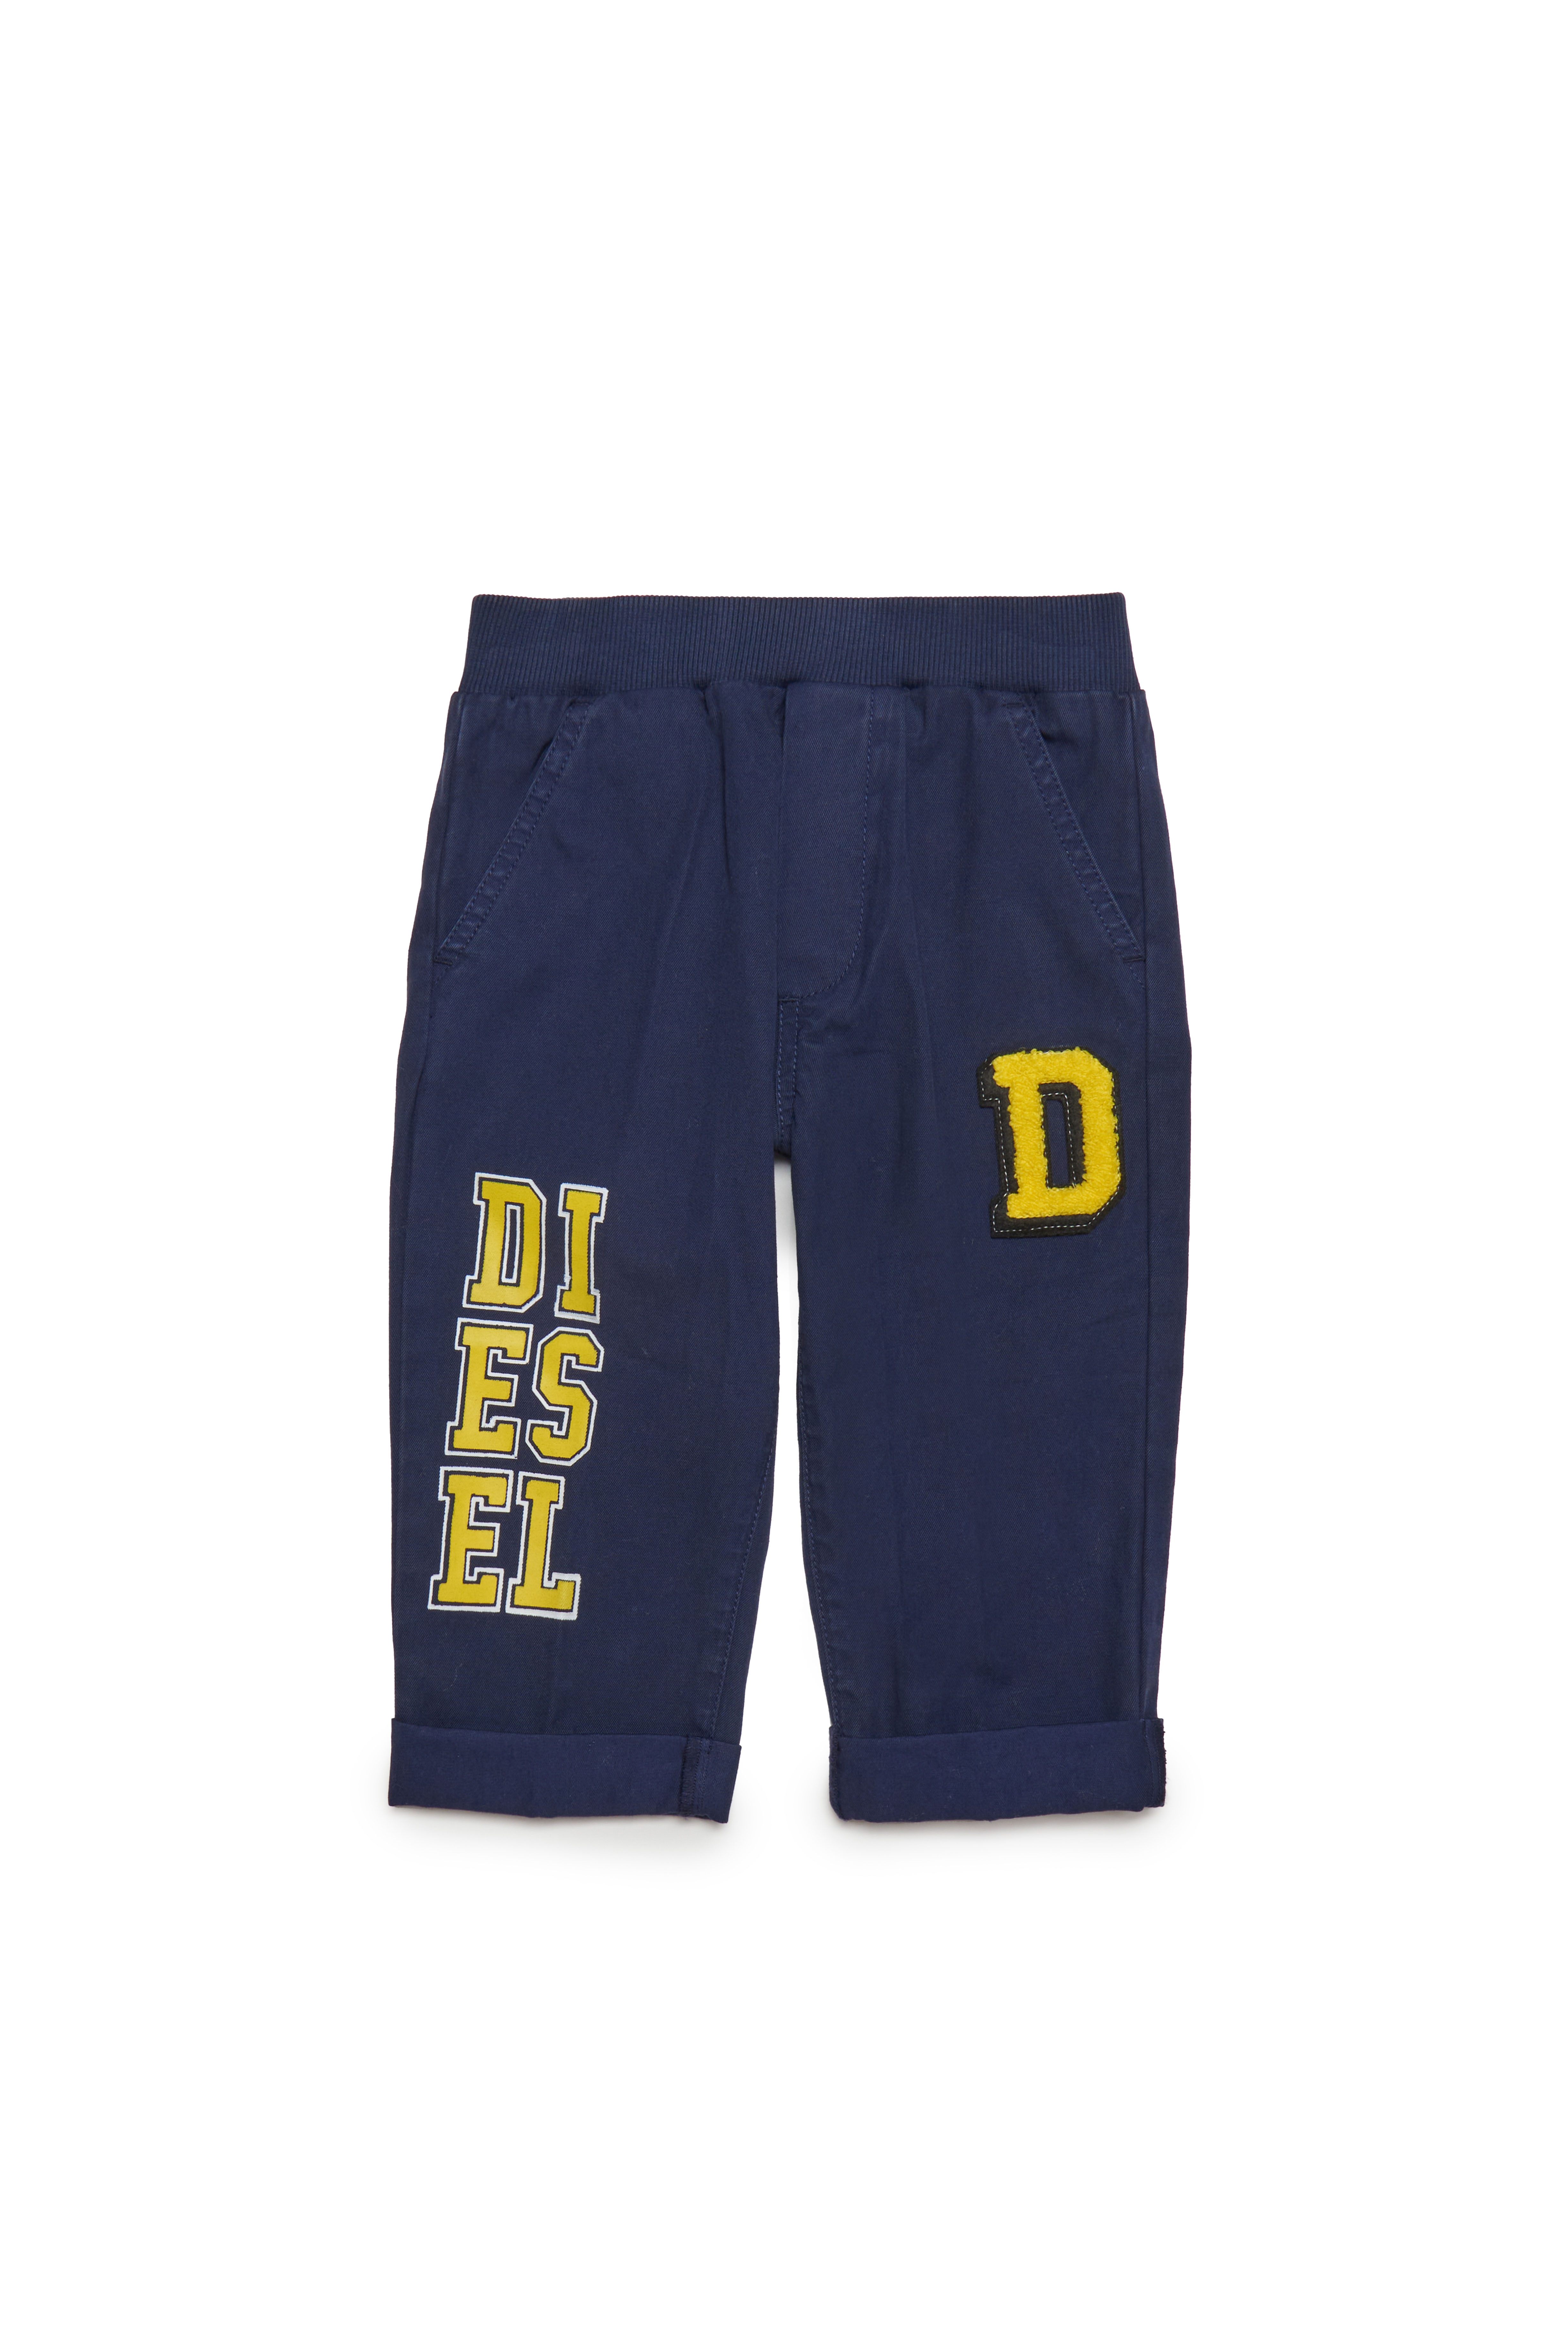 Diesel - Pantalones de algodón con logotipos estilo universitario - Pantalones - Hombre - Azul marino